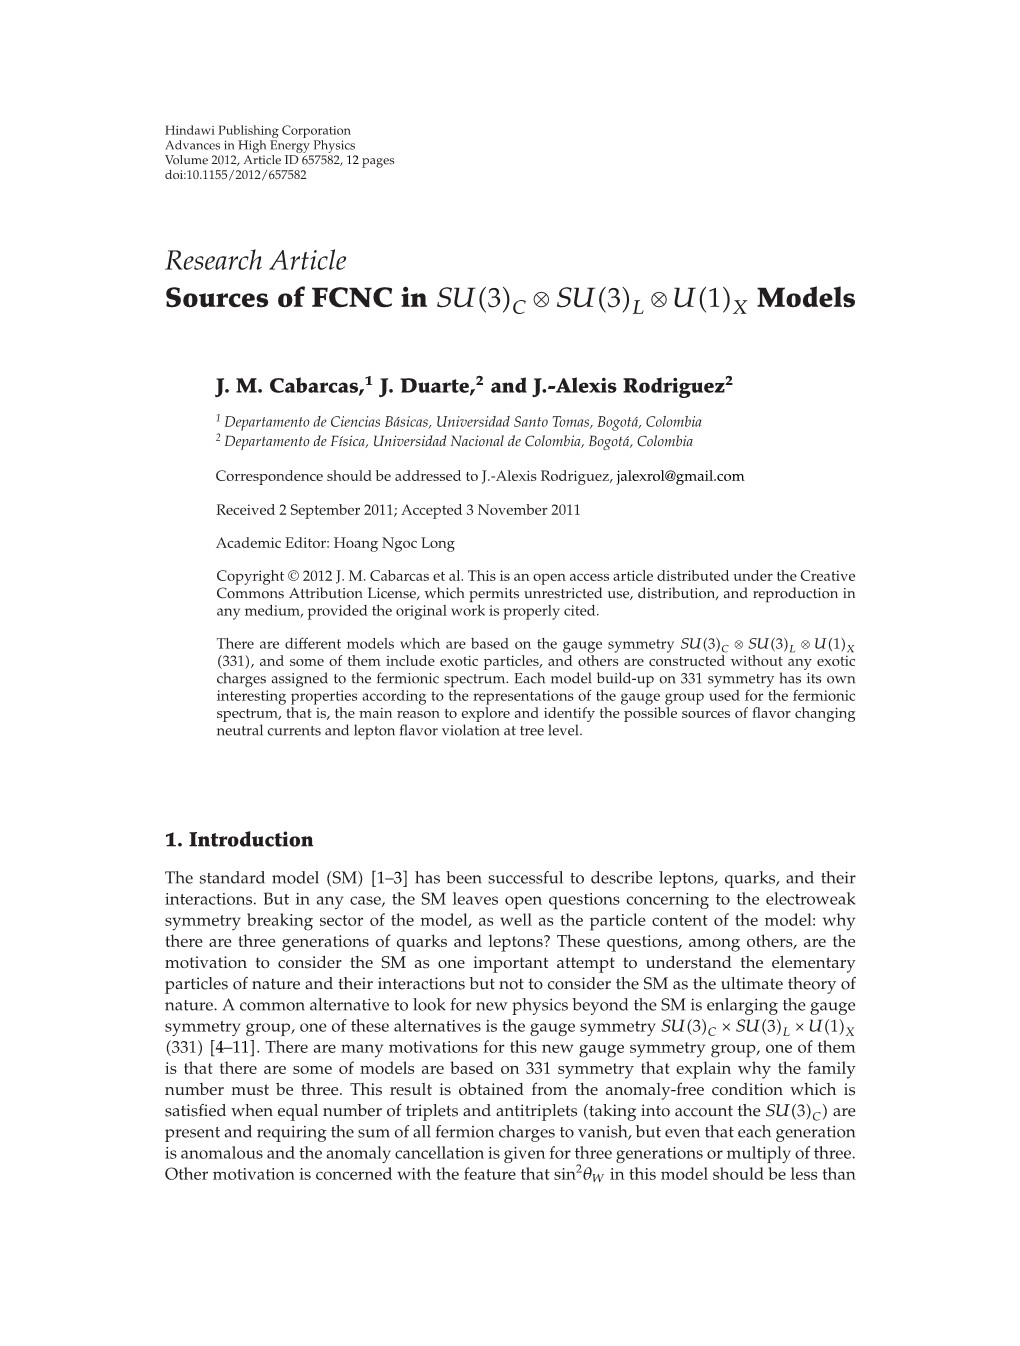 Research Article Sources of FCNC in SU 3C ⊗ SU 3L ⊗ U 1X Models